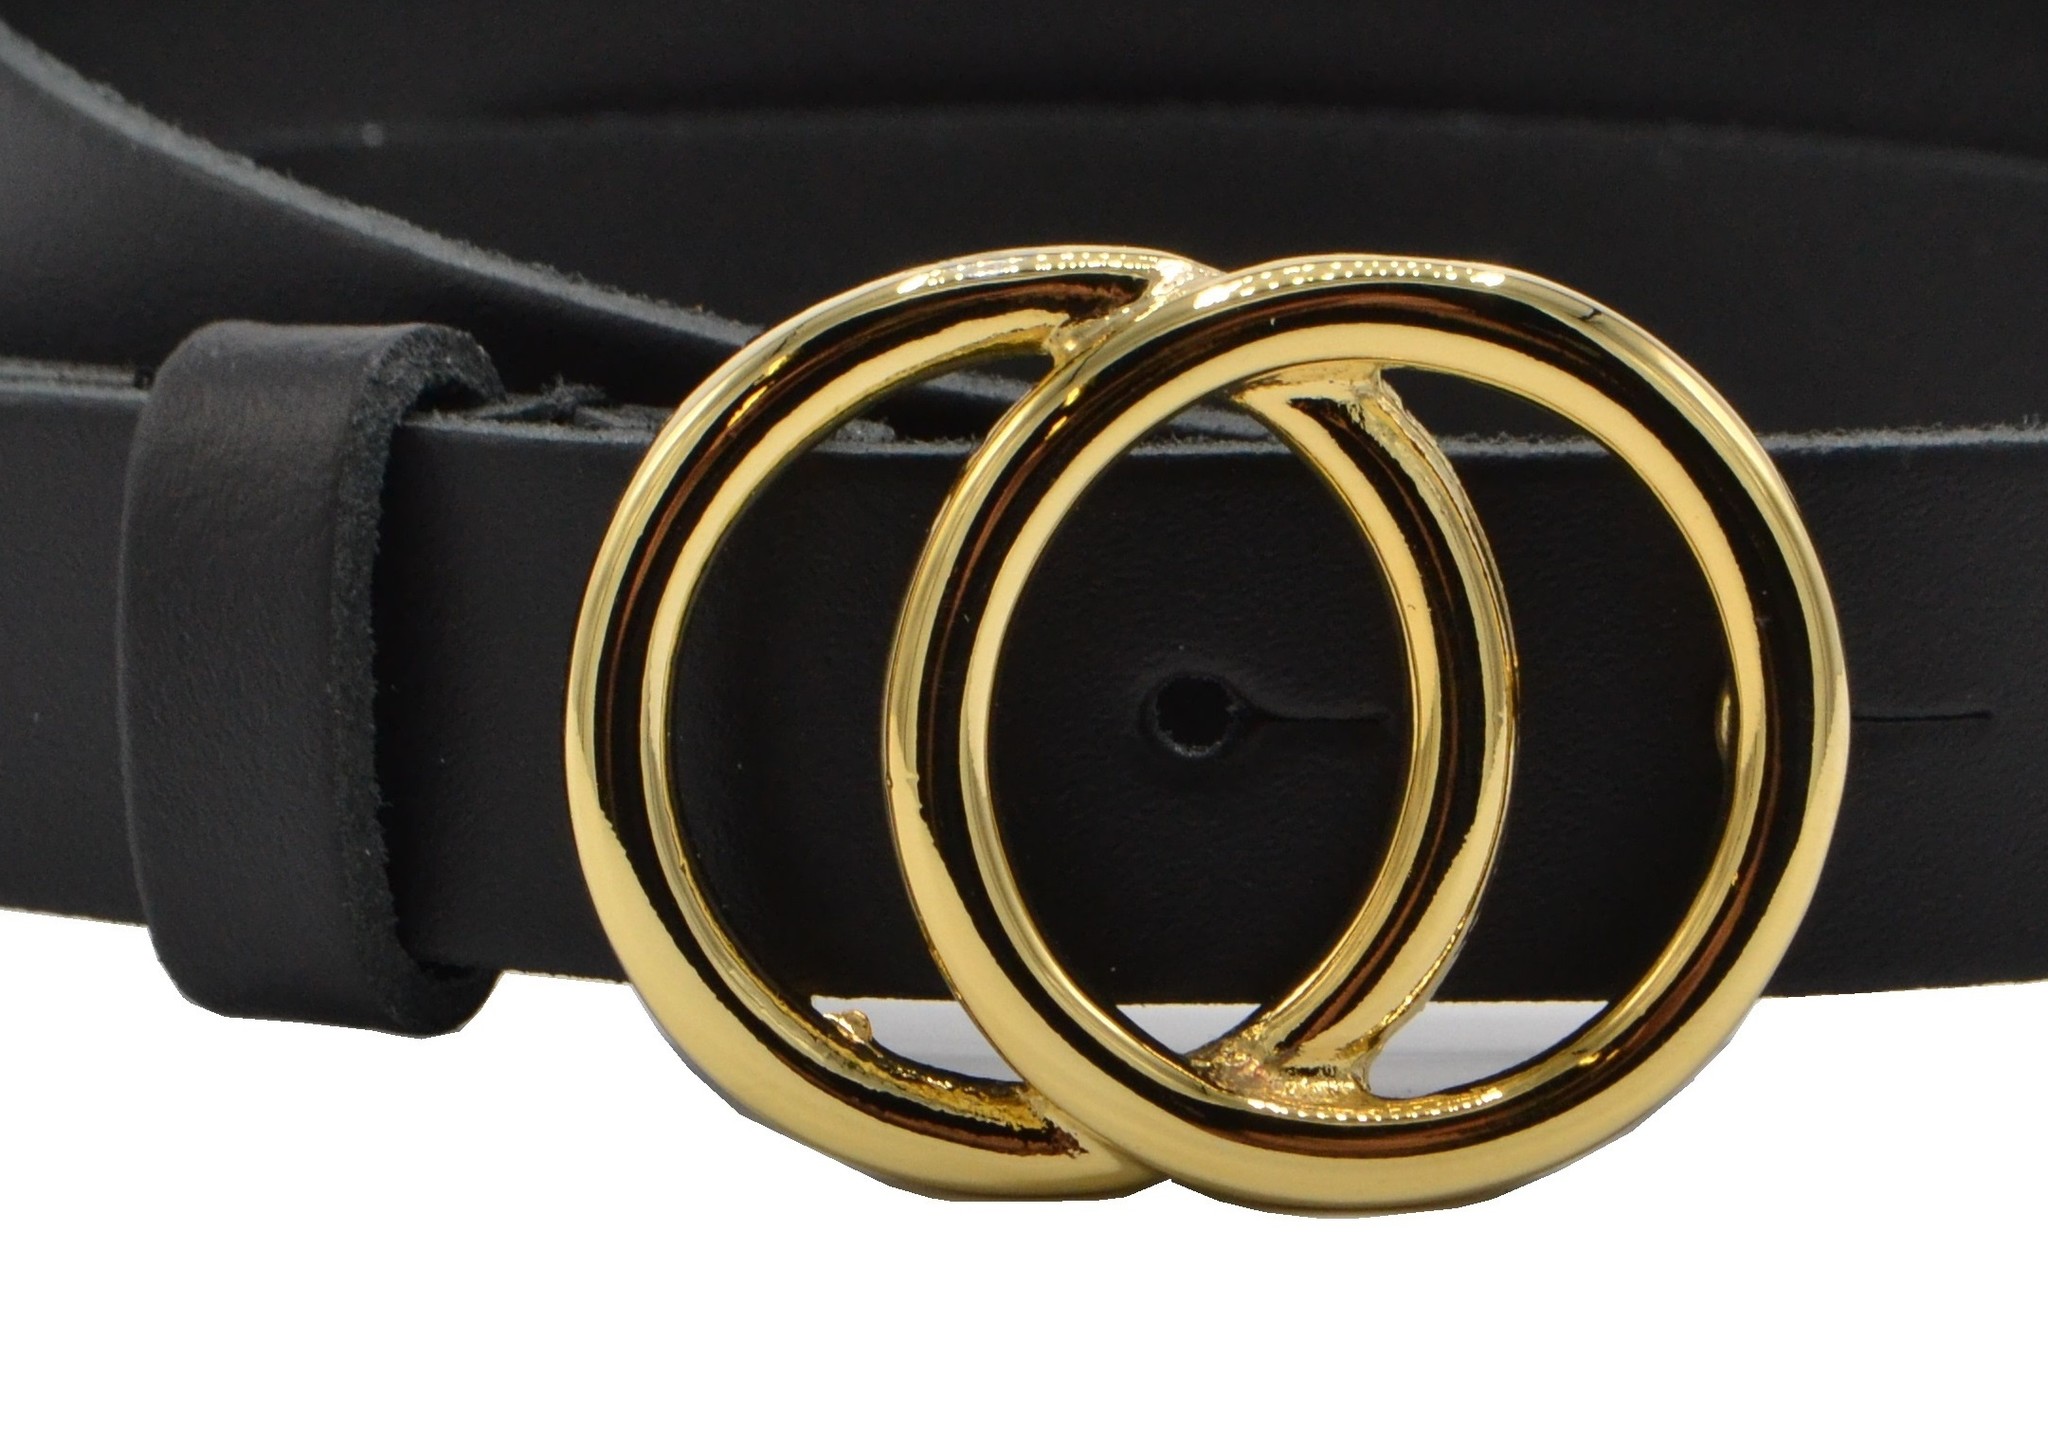 kleding Heup Baron 2.5cm zwarte riem met gouden gesp - trendy riem zoals Gucci - Riemen.nl